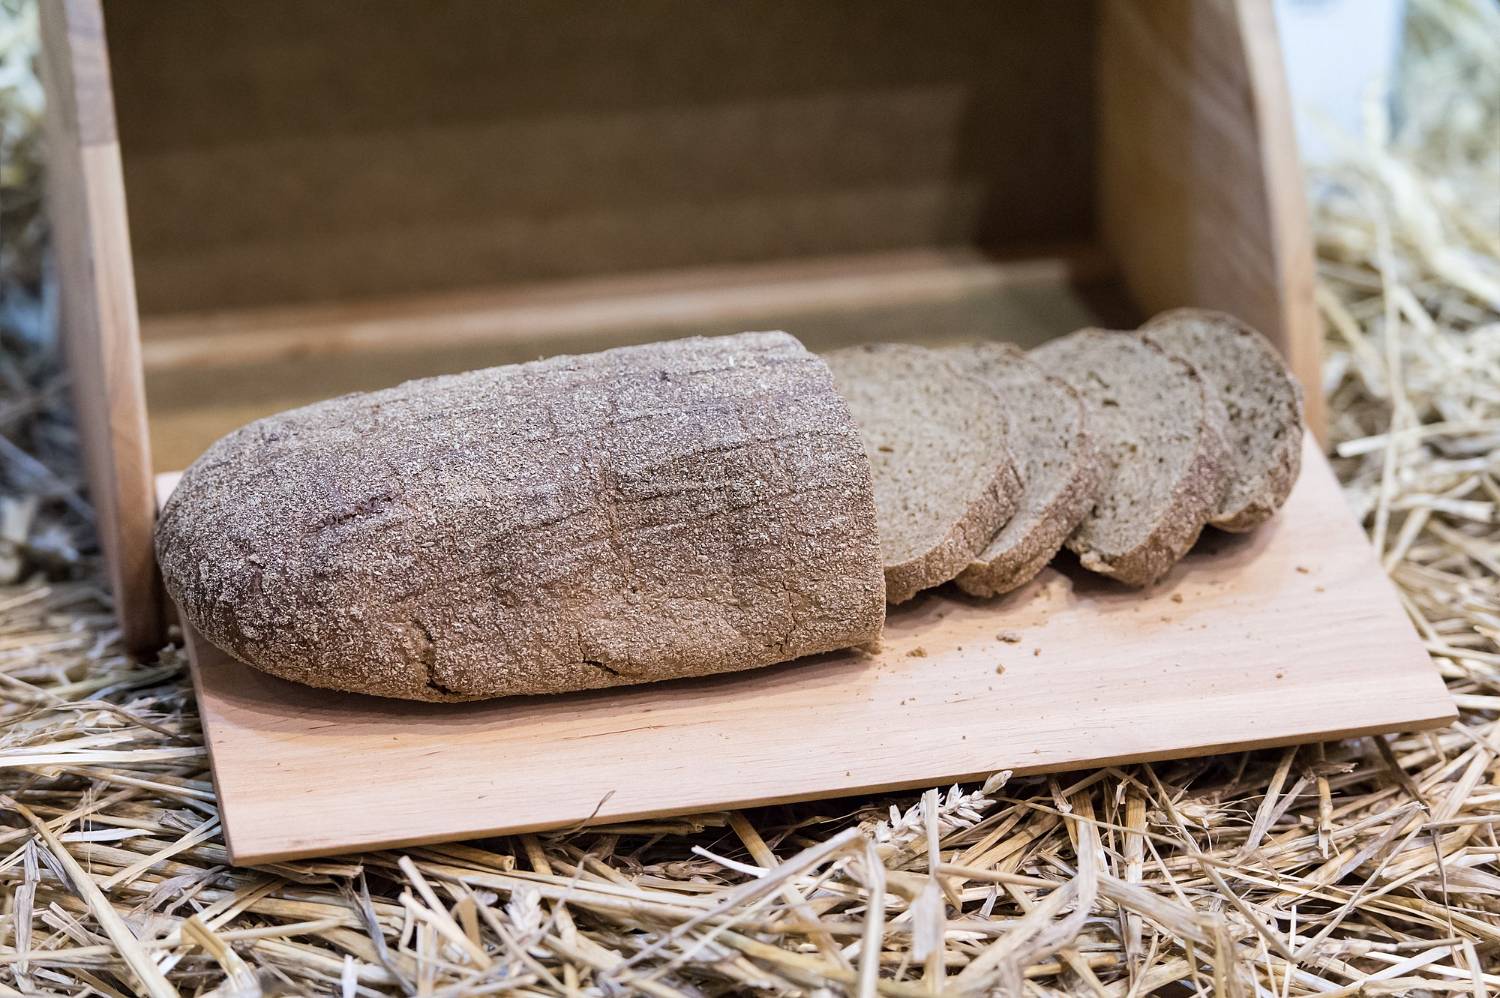 Pokrojony chleb leży w drewnianym chlebaku